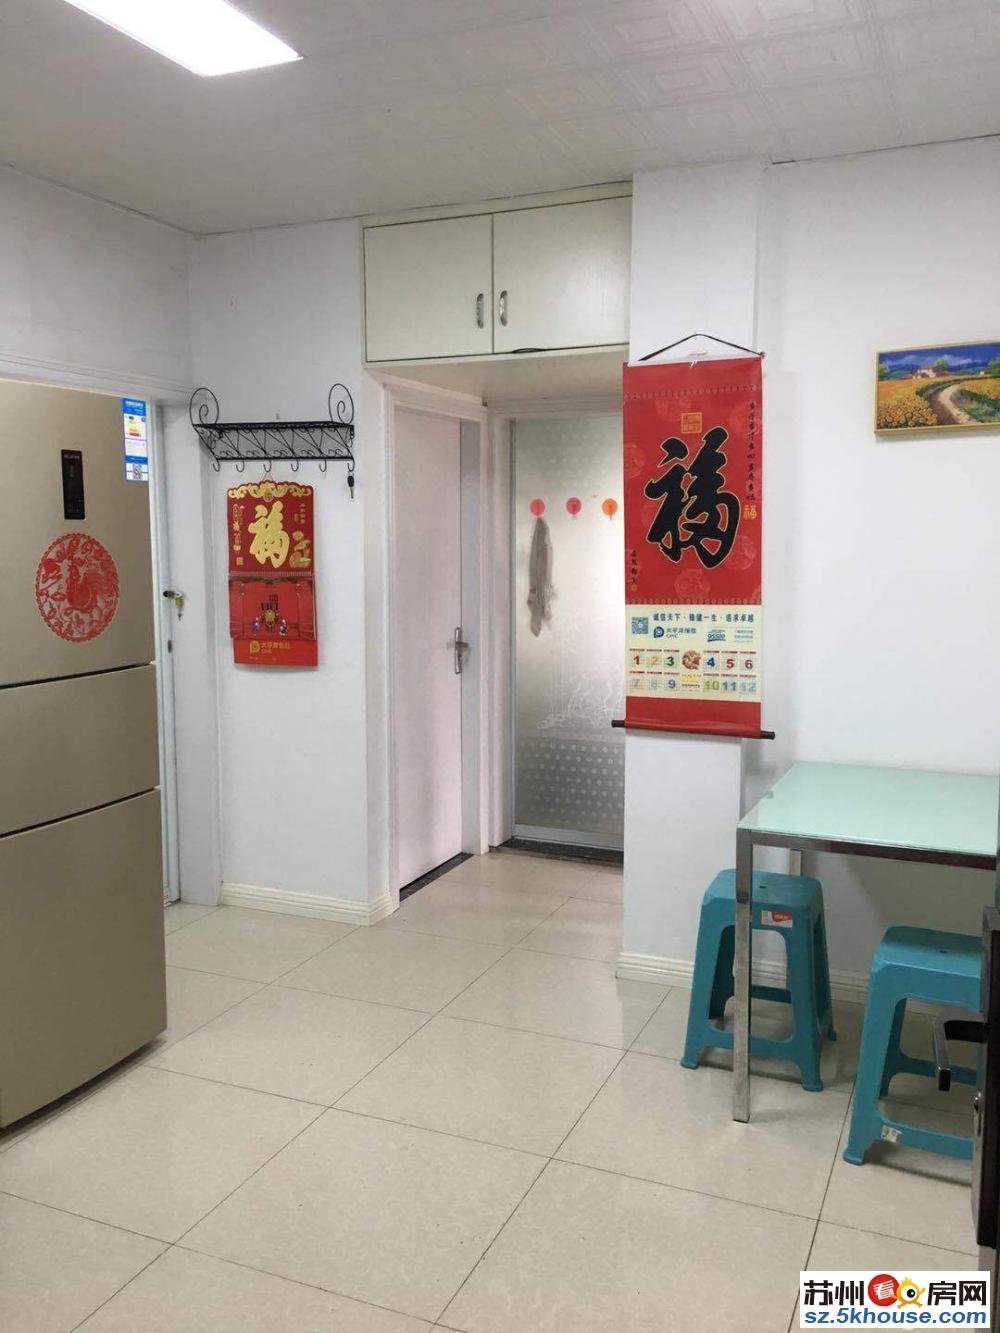 干将西路地铁1号沿线 广济路站附近彩香三区精装修两室居出租